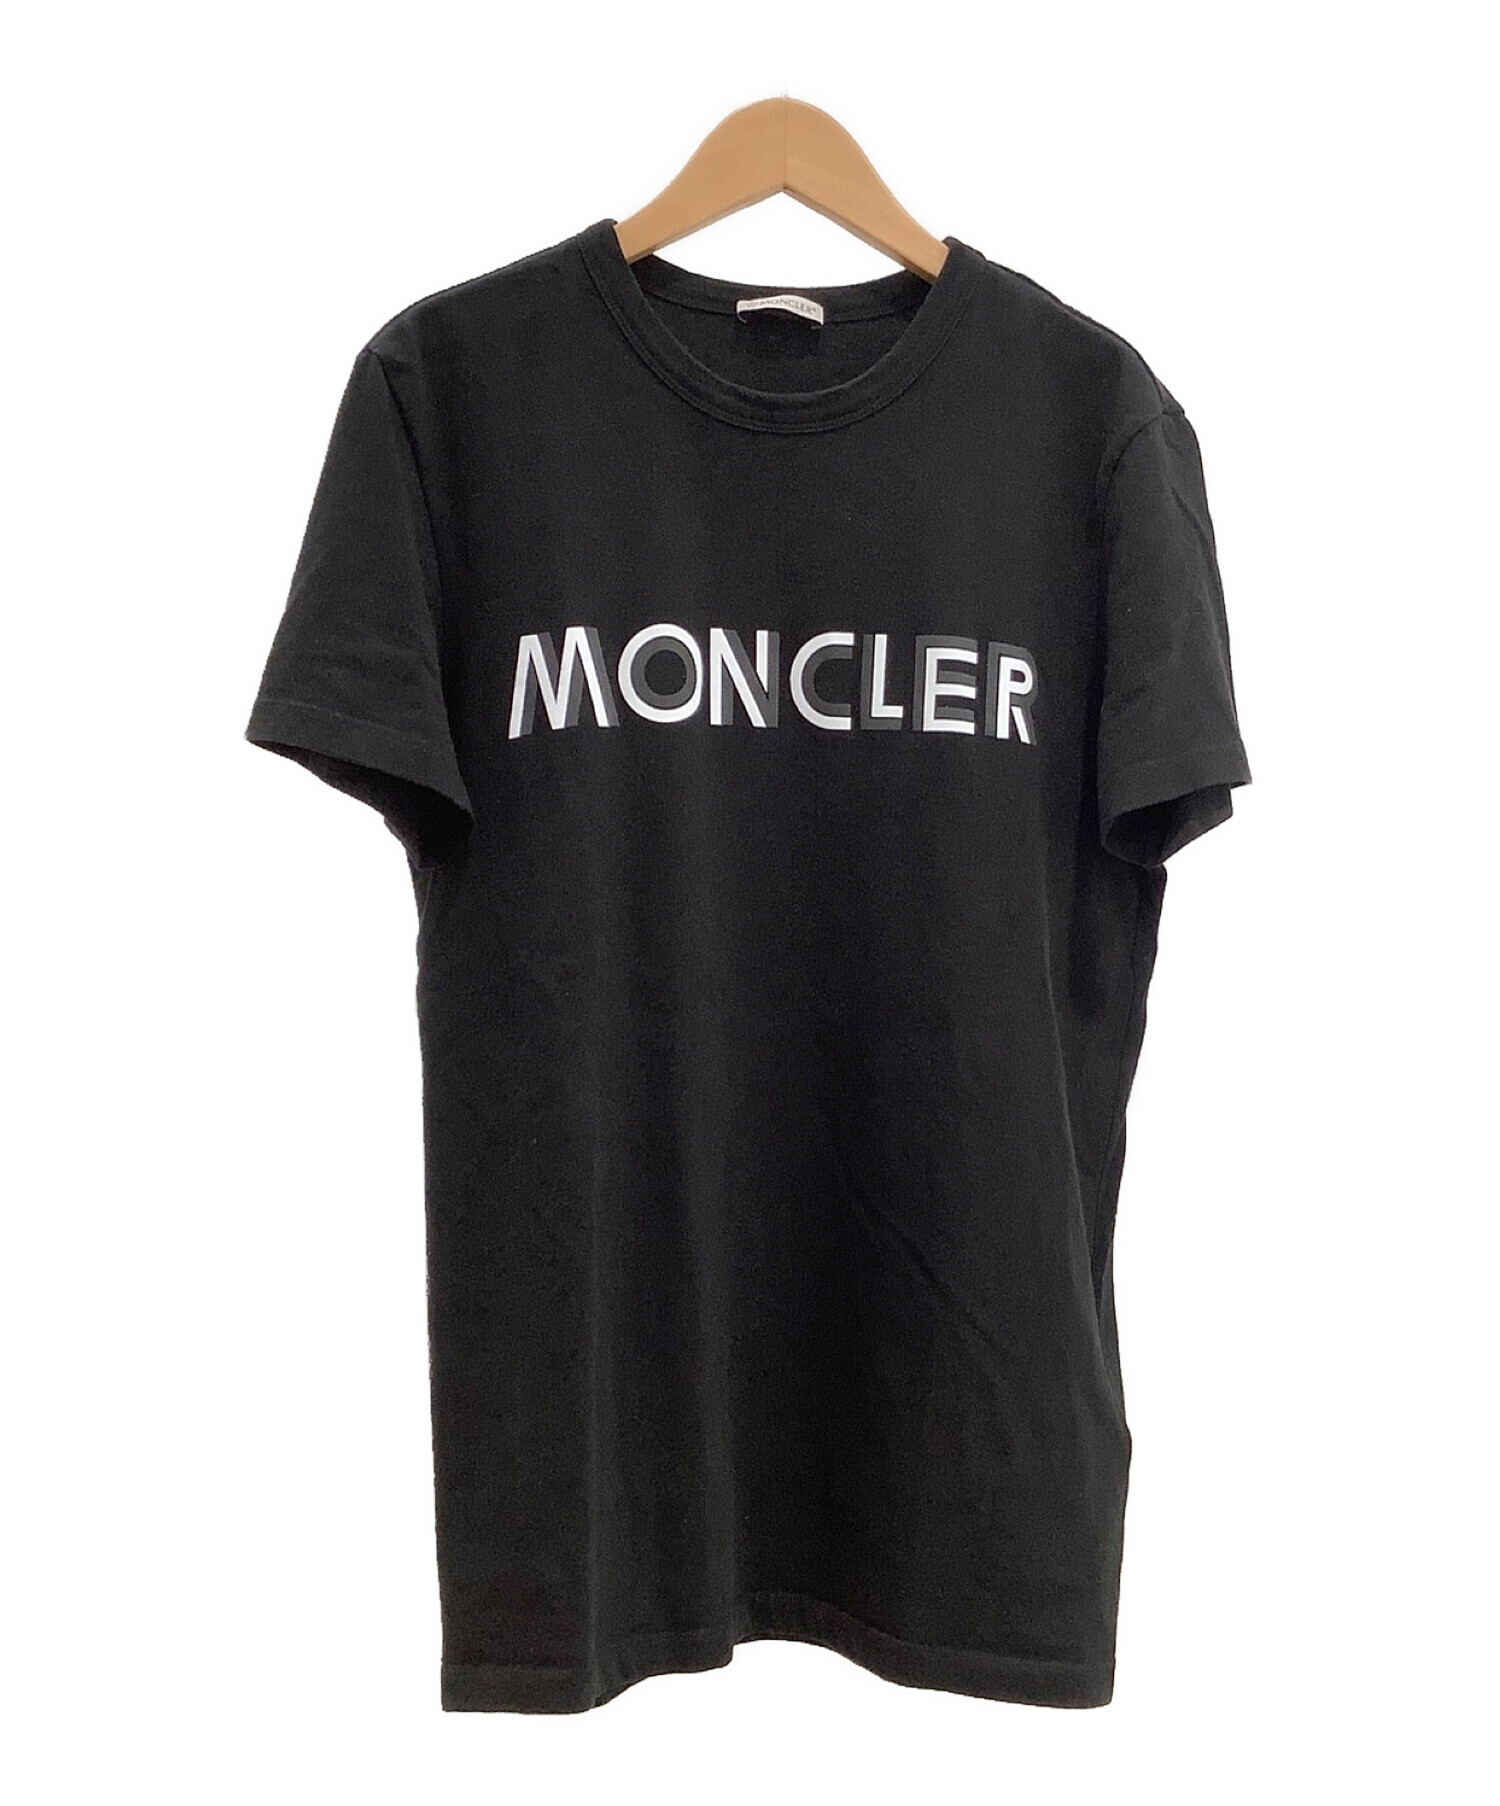 moncler モンクレール Tシャツ sサイズ